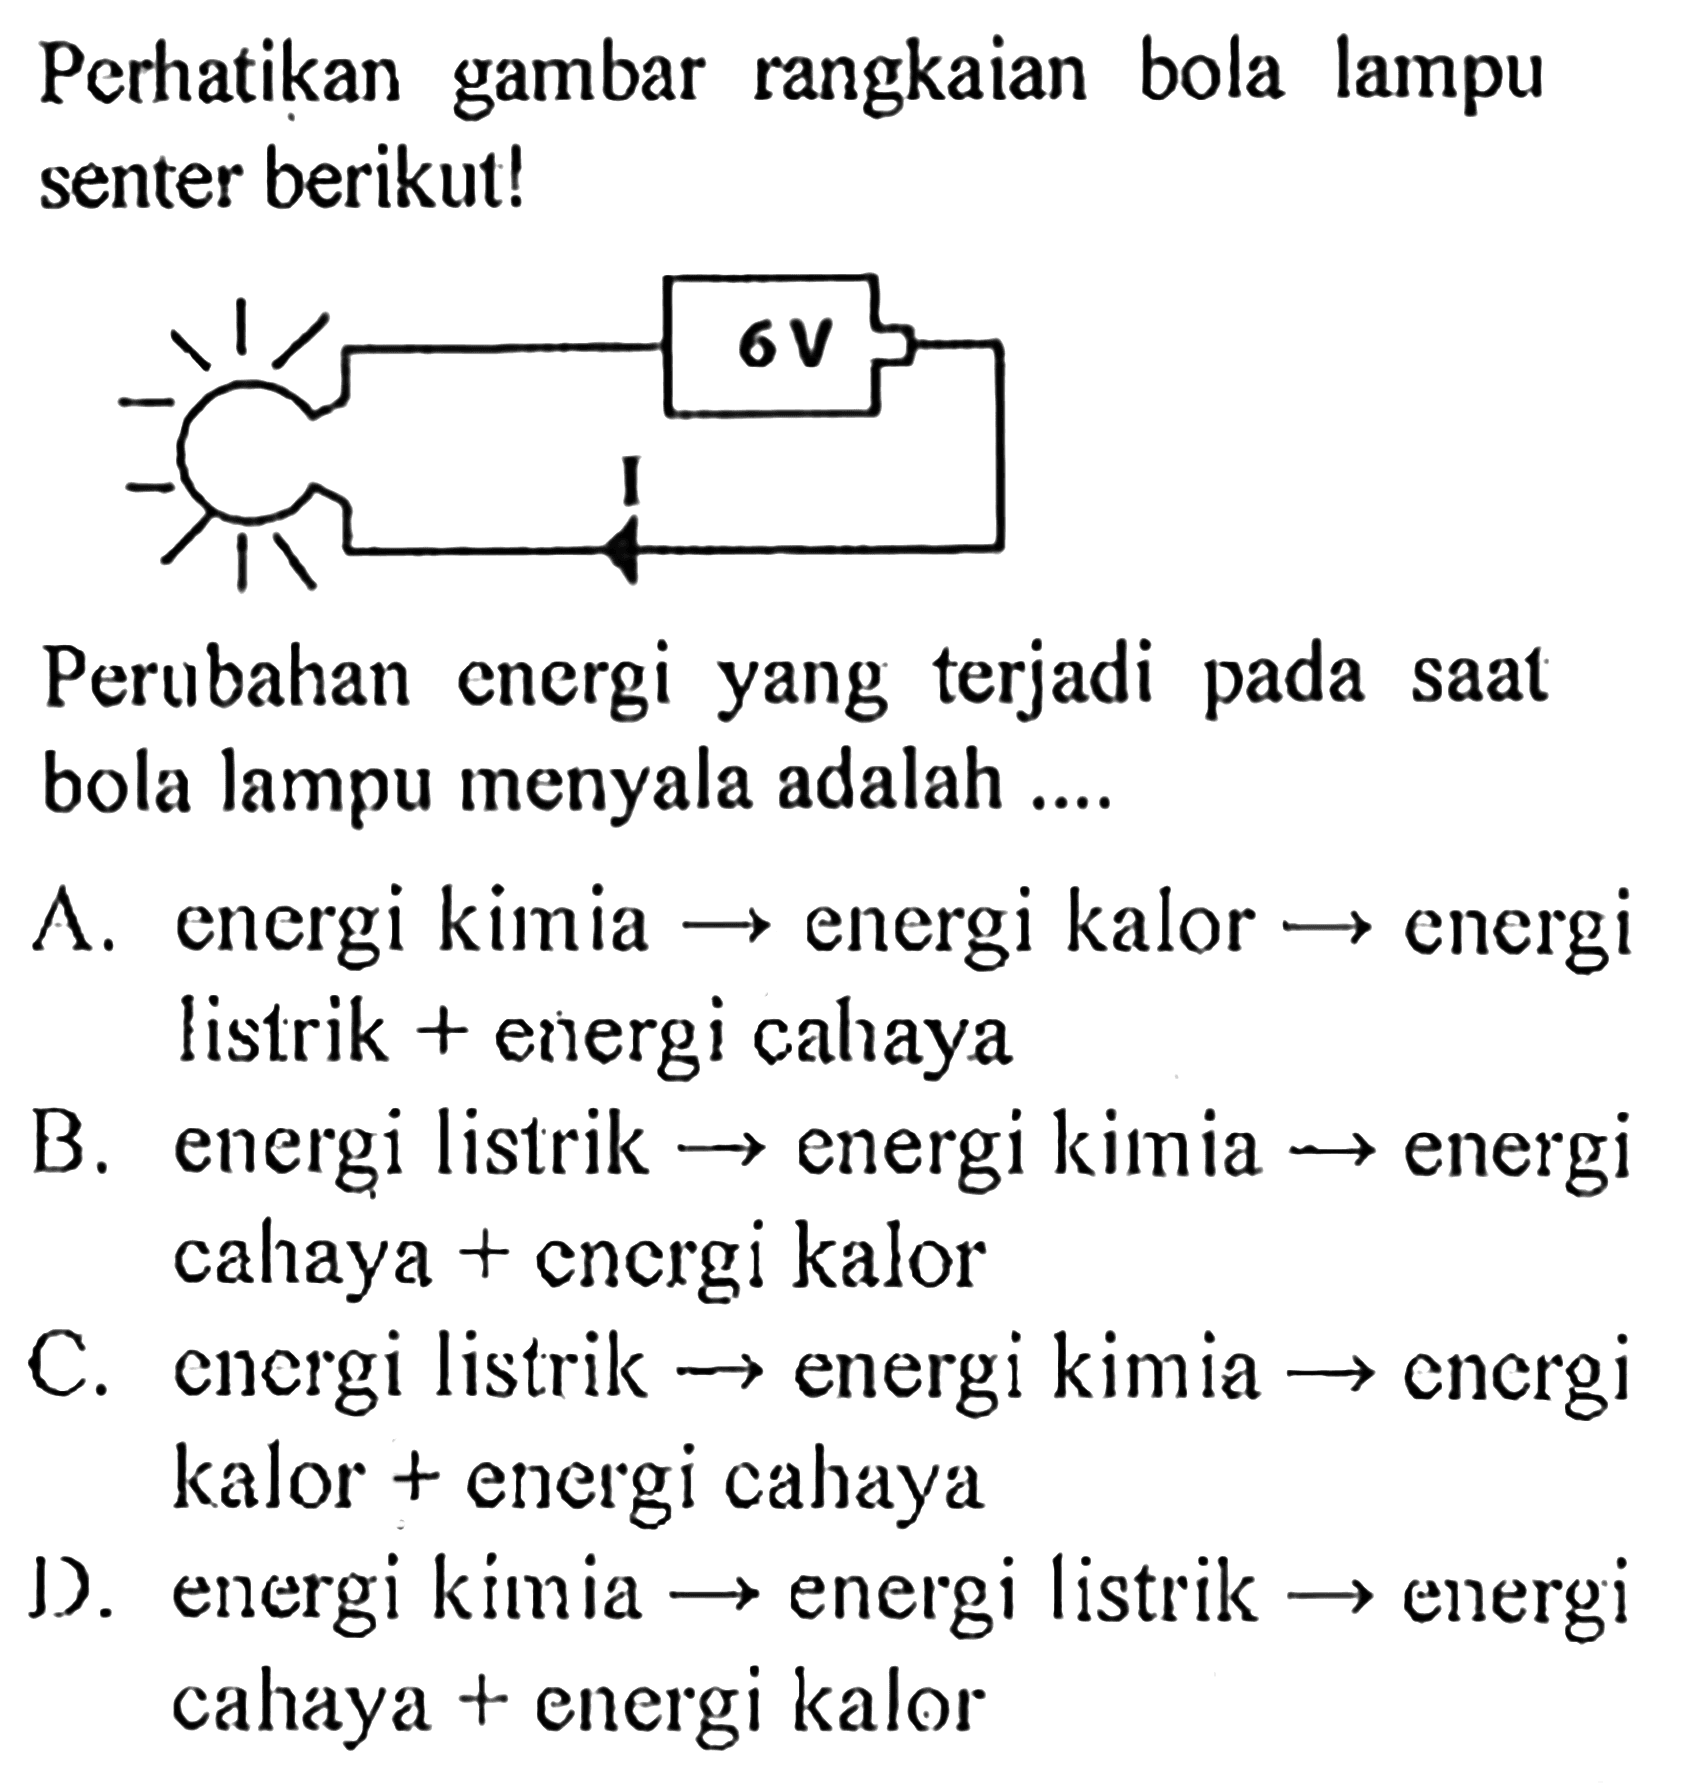 Perhatikan gambar rangkaian bola lampu senter berikut!6 V IPerubahan energi yang terjadi pada saat bola lampu menyala adalah ....